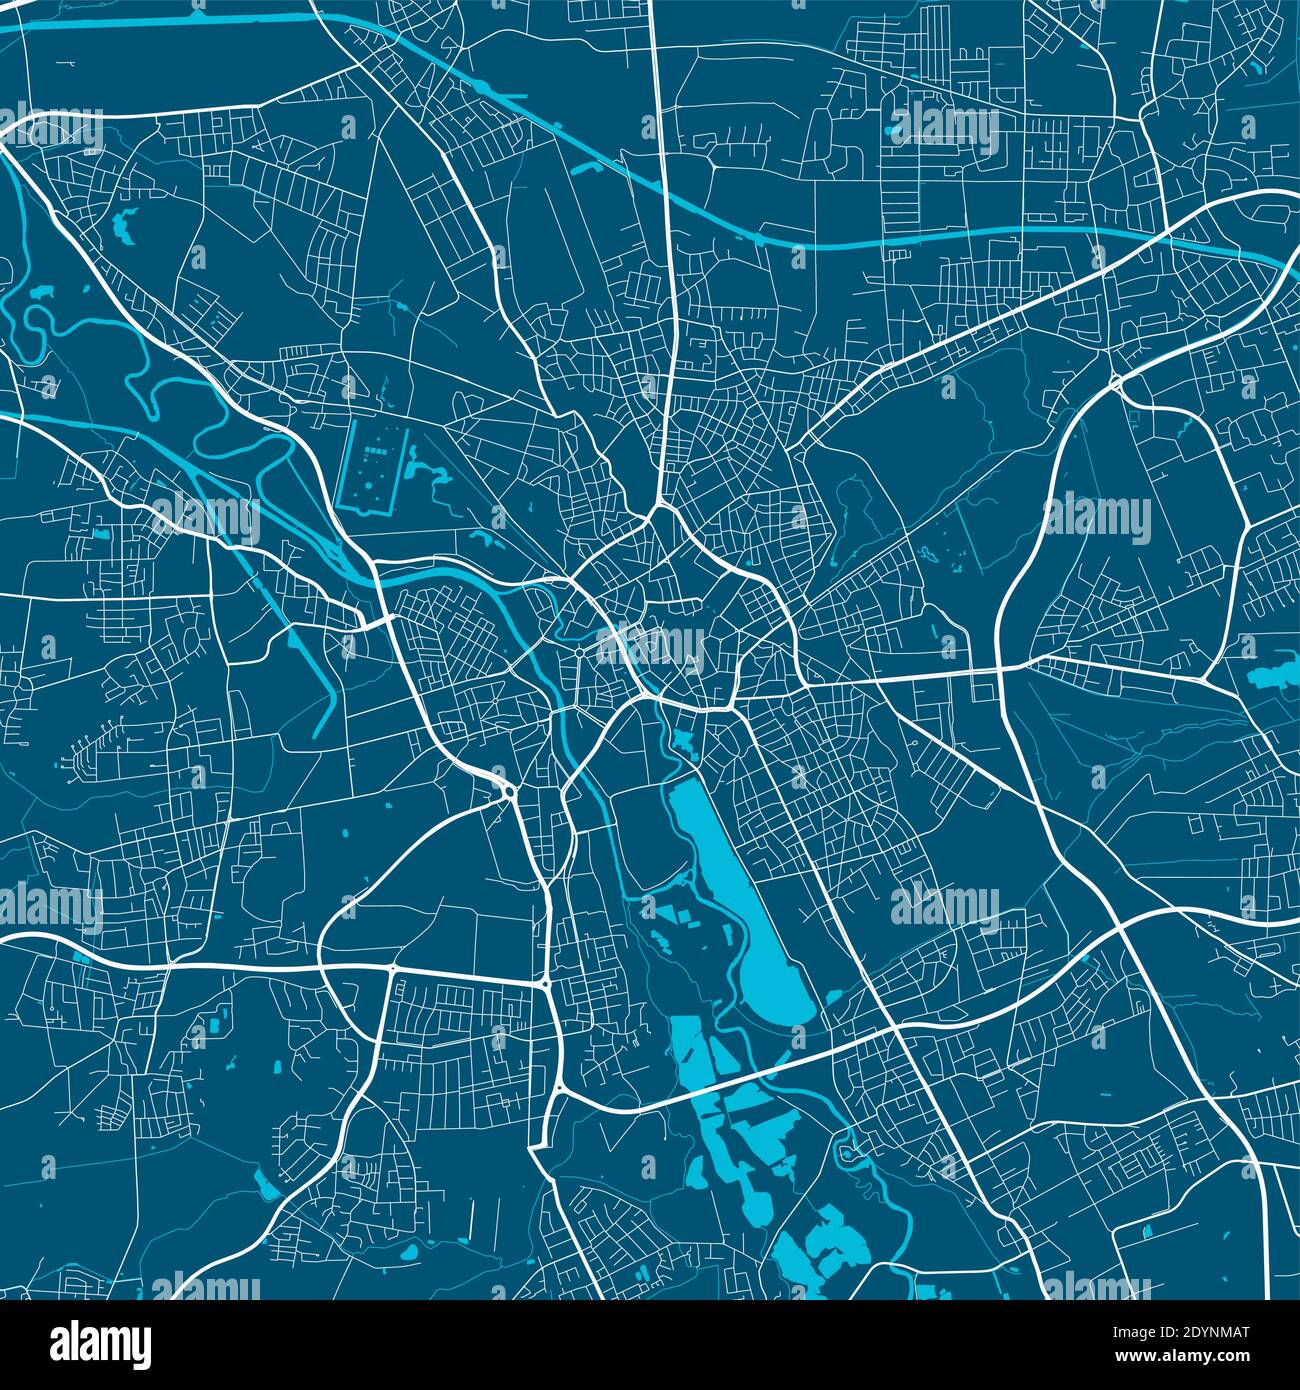 Mappa vettoriale di Hannover. Illustrazione del poster della mappa stradale. Arte della mappa di Hannover Illustrazione Vettoriale